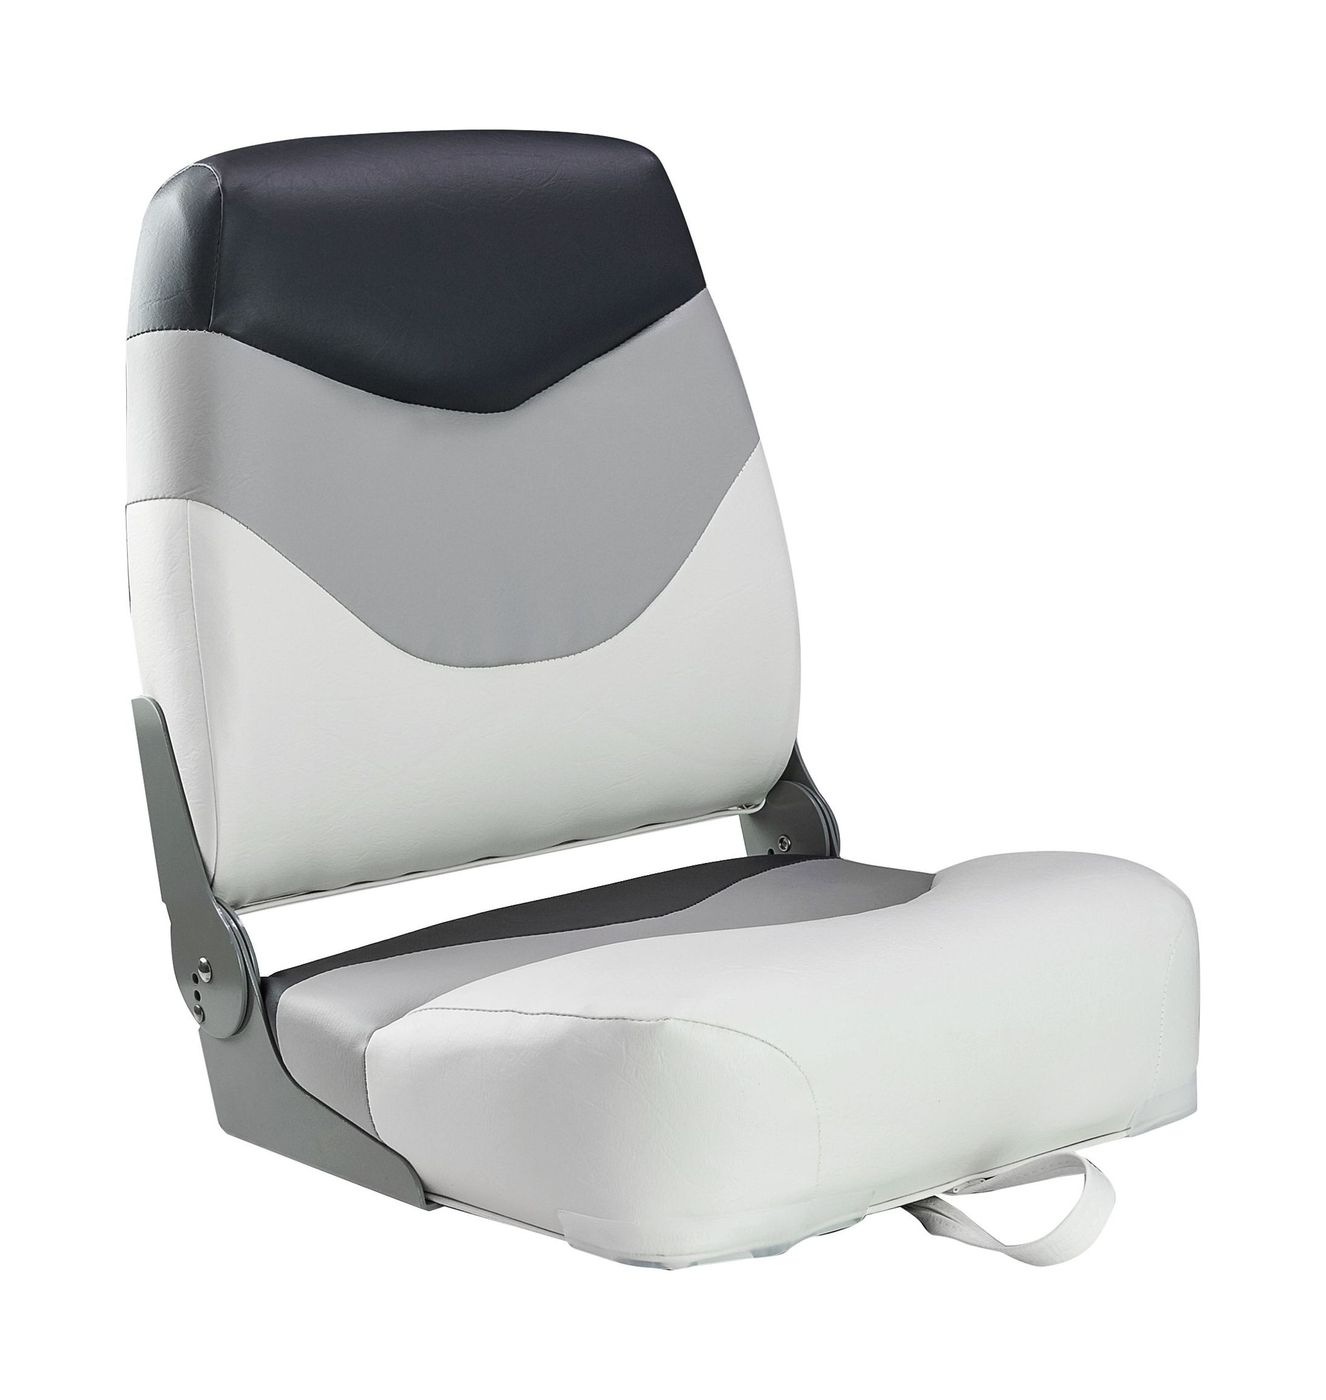 Кресло мягкое складное Premium, обивка винил, цвет белый/серый/угольный, Marine Rocket 75128WGC-MR сзу rocket